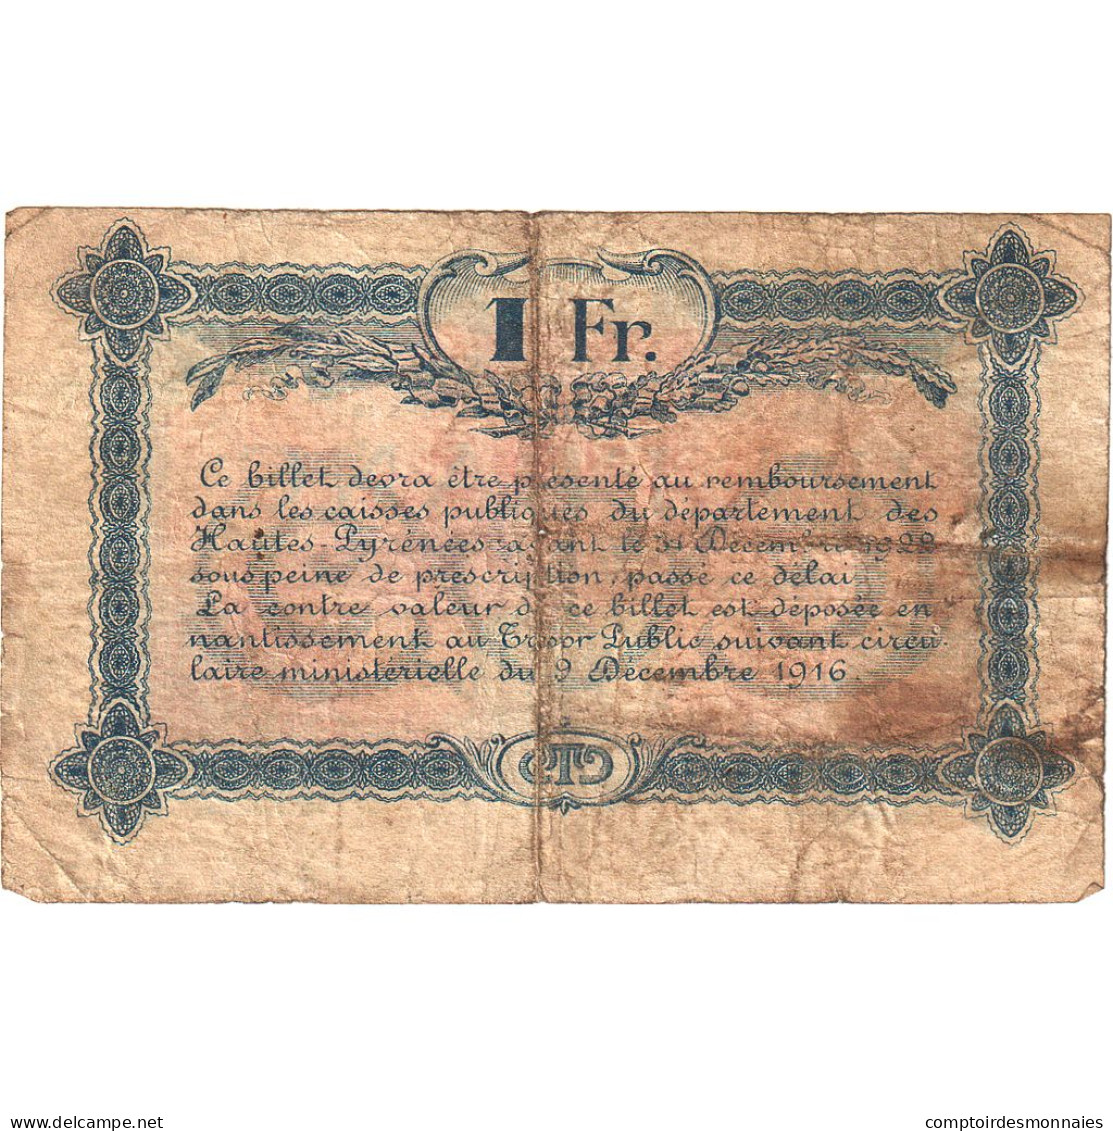 France, Tarbes, 1 Franc, 1917, TB, Pirot:120-18 - Handelskammer